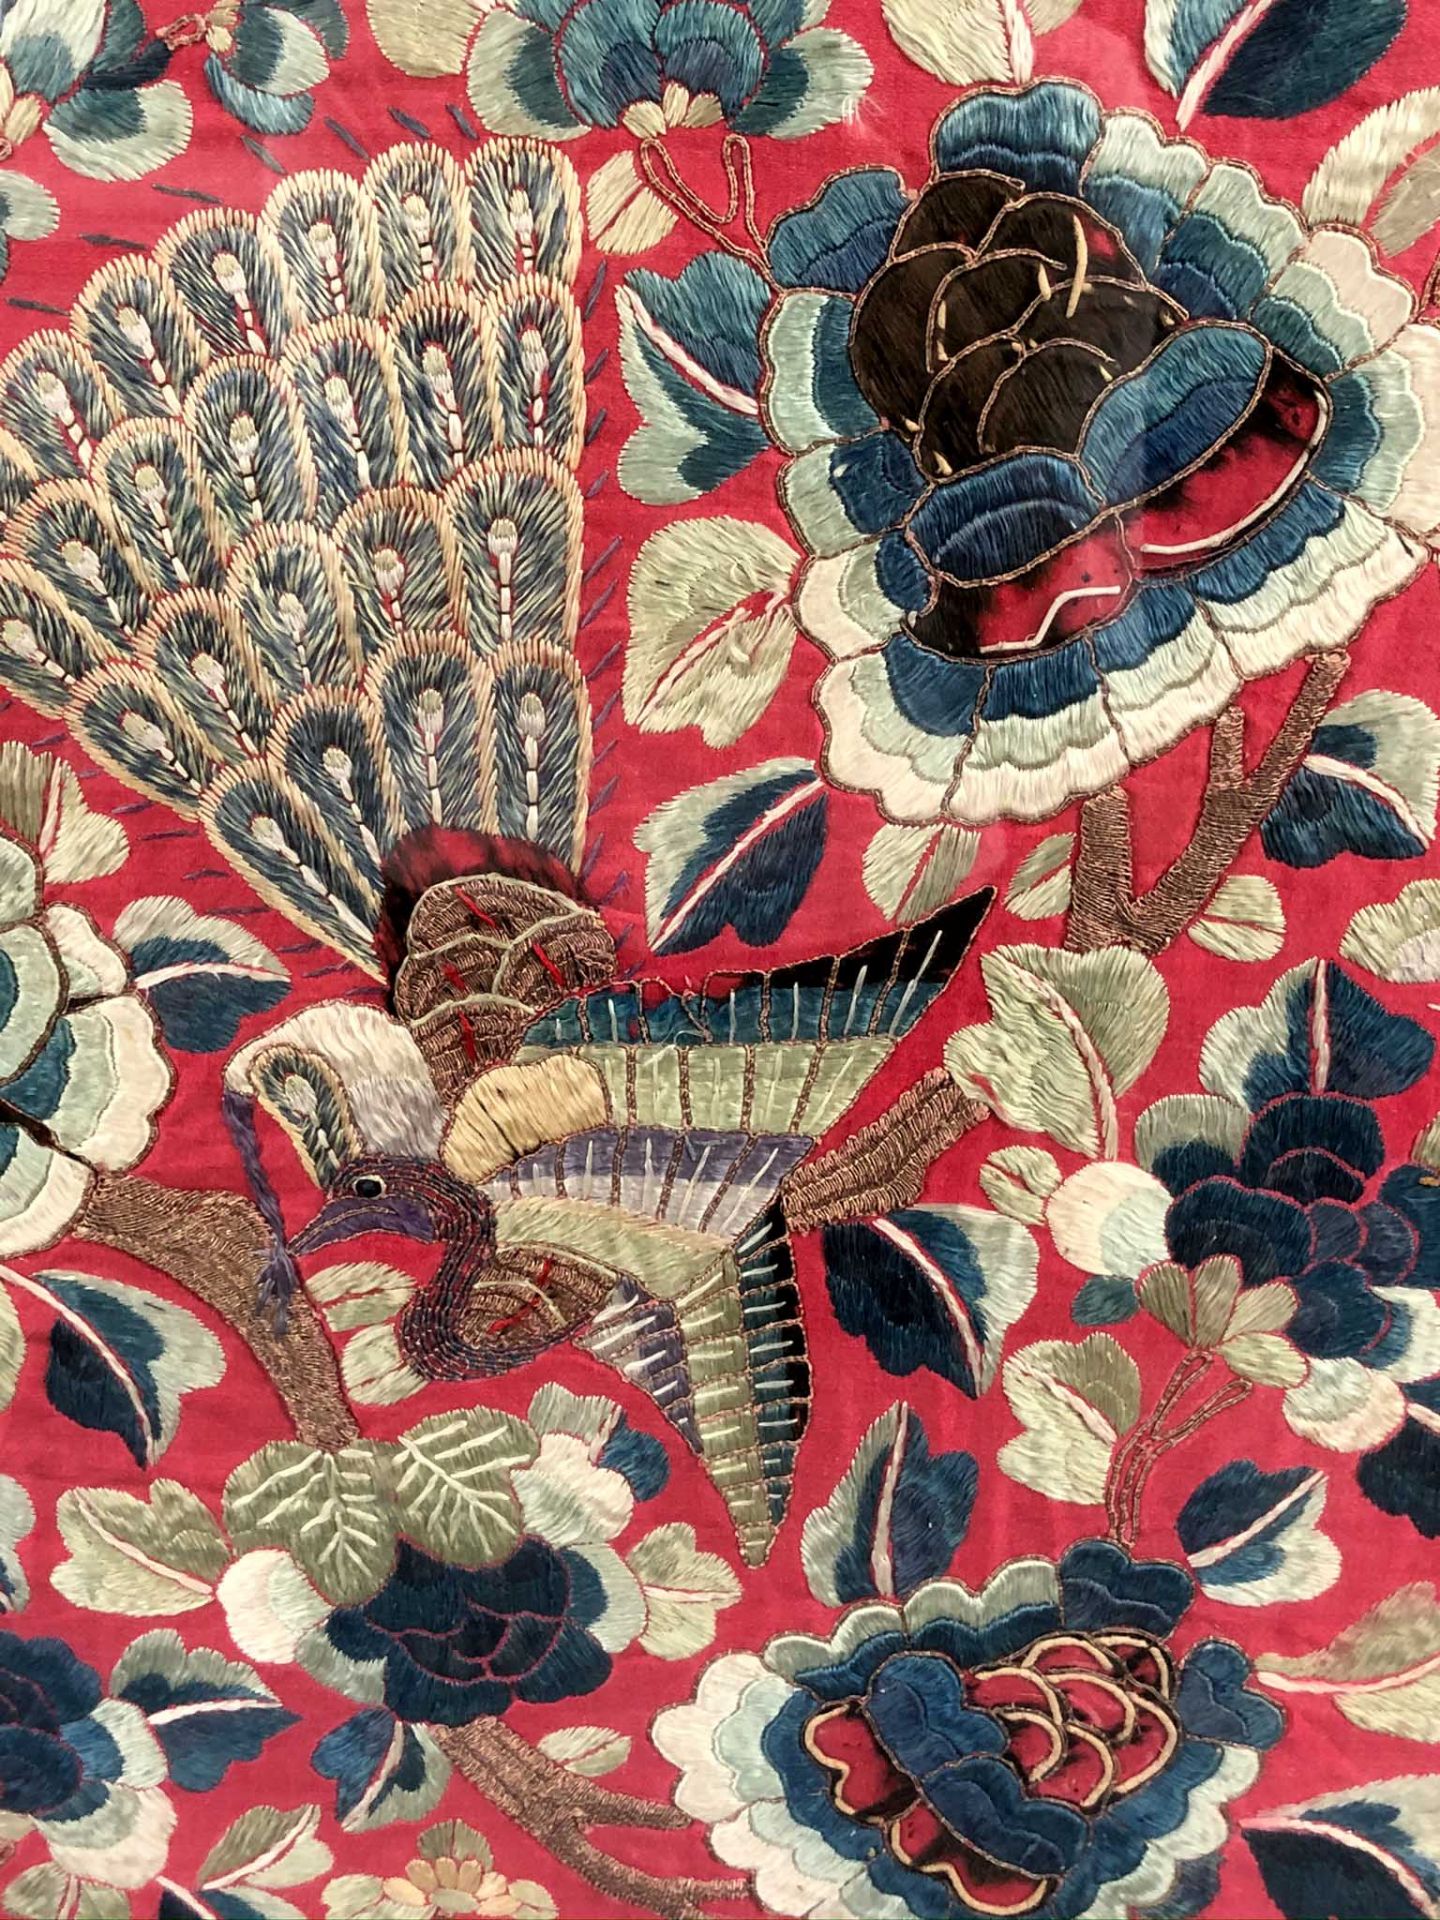 Behang. Seidenstickerei, Stumpwork. Wohl China 19. Jahrhundert.91,5 cm x 98 cm sichtbar. Hinten - Bild 13 aus 14